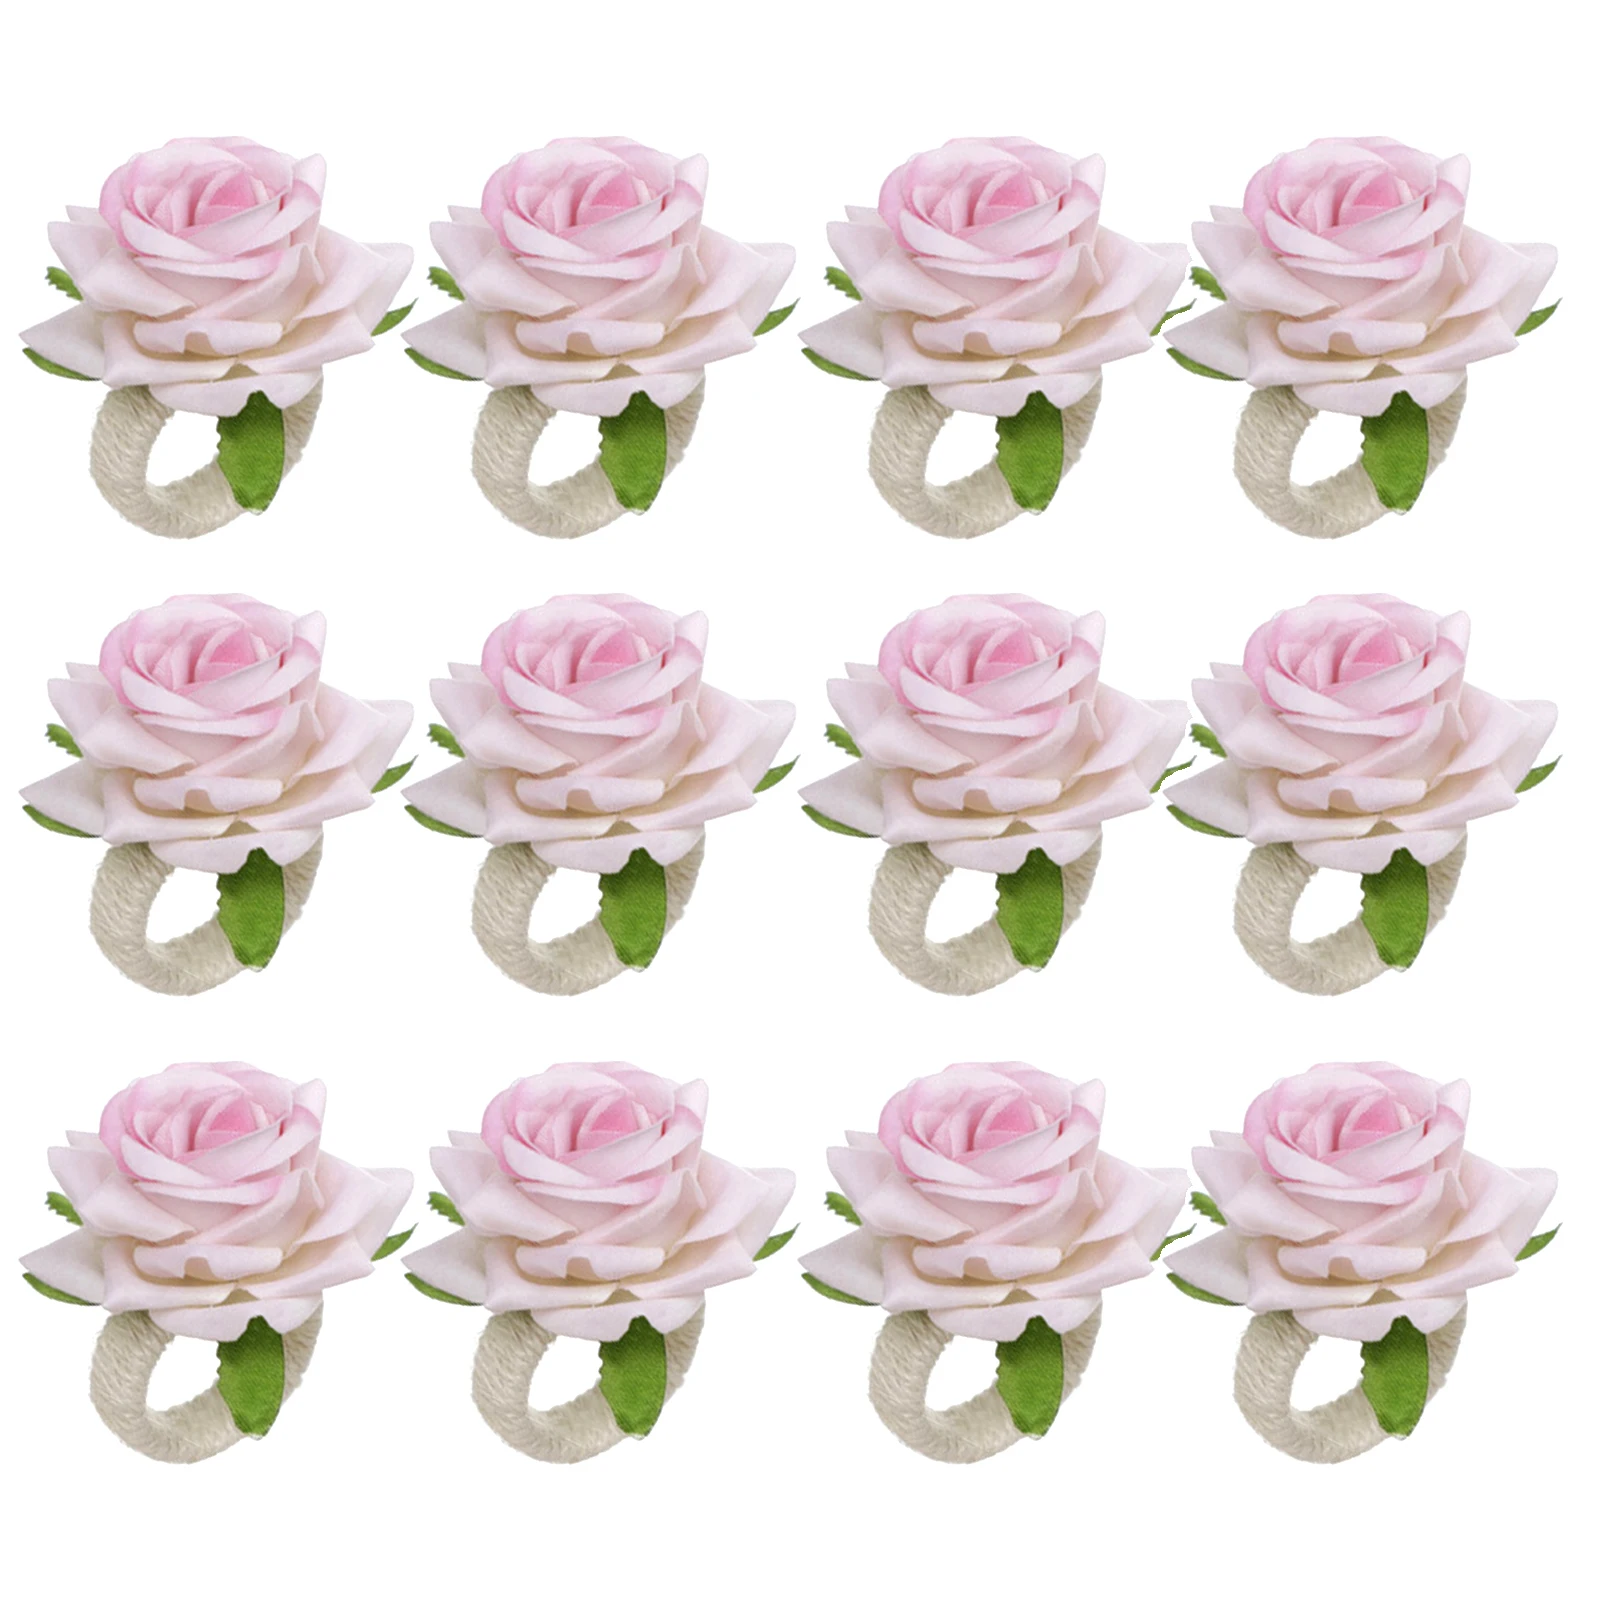 

12 шт. многоразовое украшение для свадебного стола в виде Розы, романтичное кольцо для салфеток в ресторане на Рождество, День святого Валентина